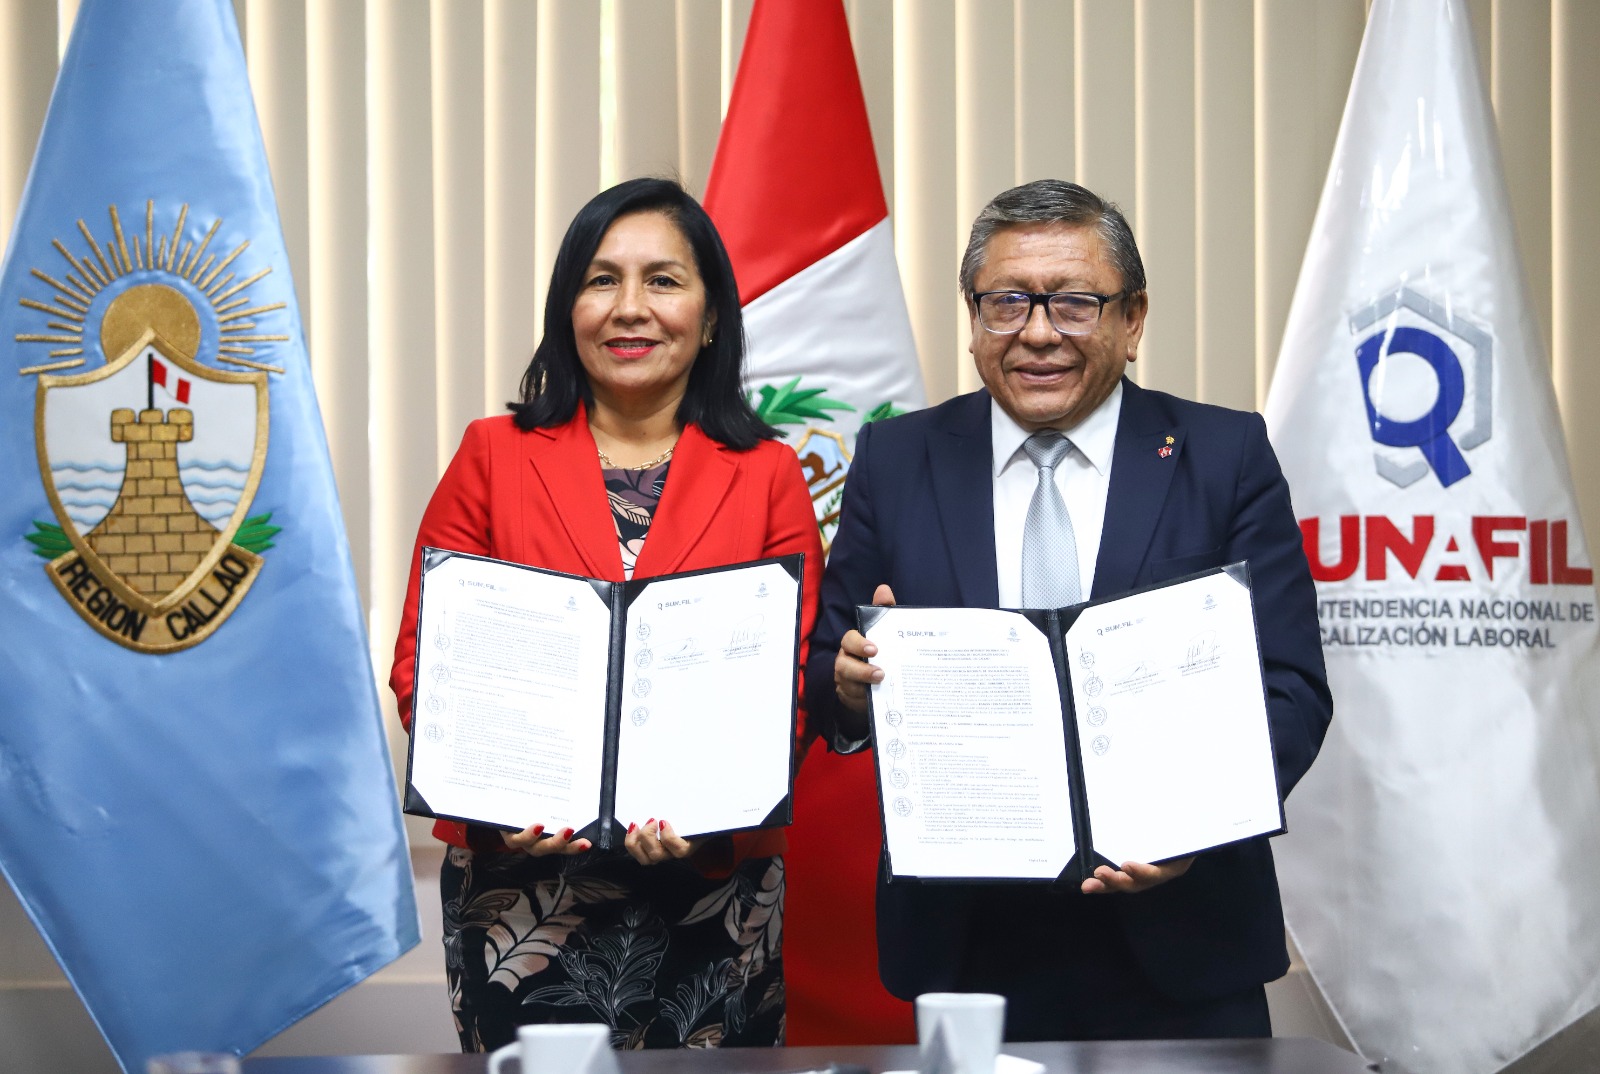 Gore y Sunafil firman convenio para promover la formalización laboral